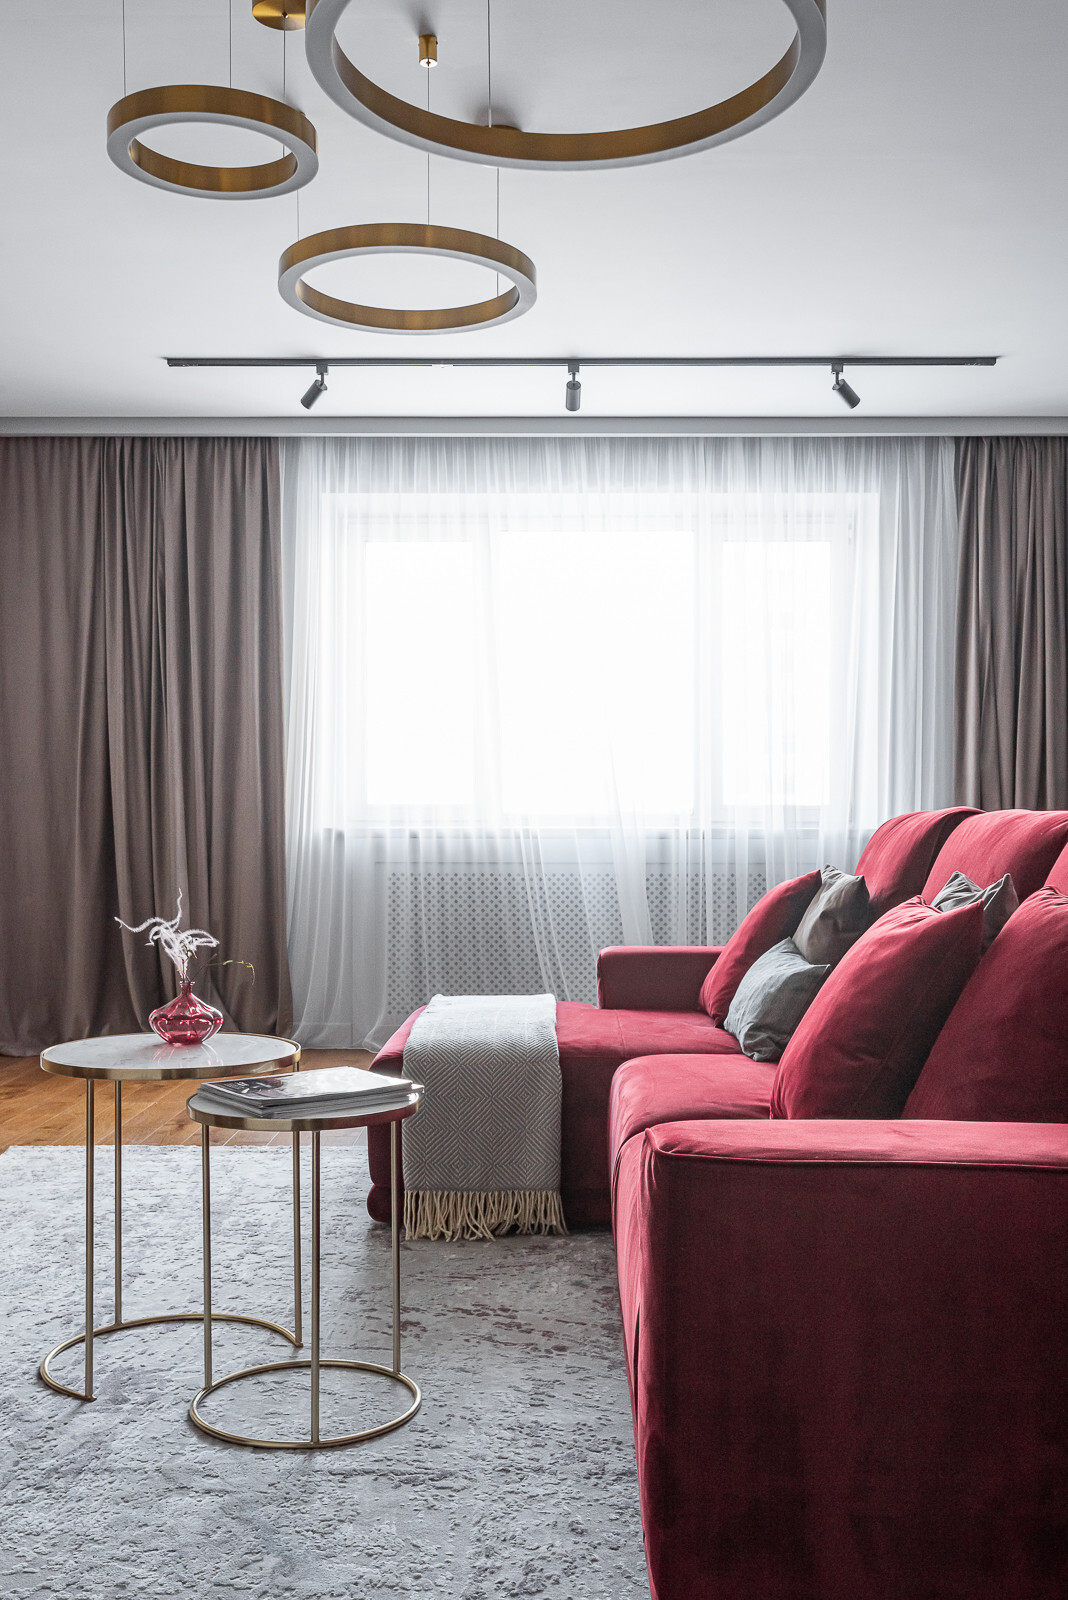 Интерьер гостиной cветовыми линиями и рейками с подсветкой в современном стиле